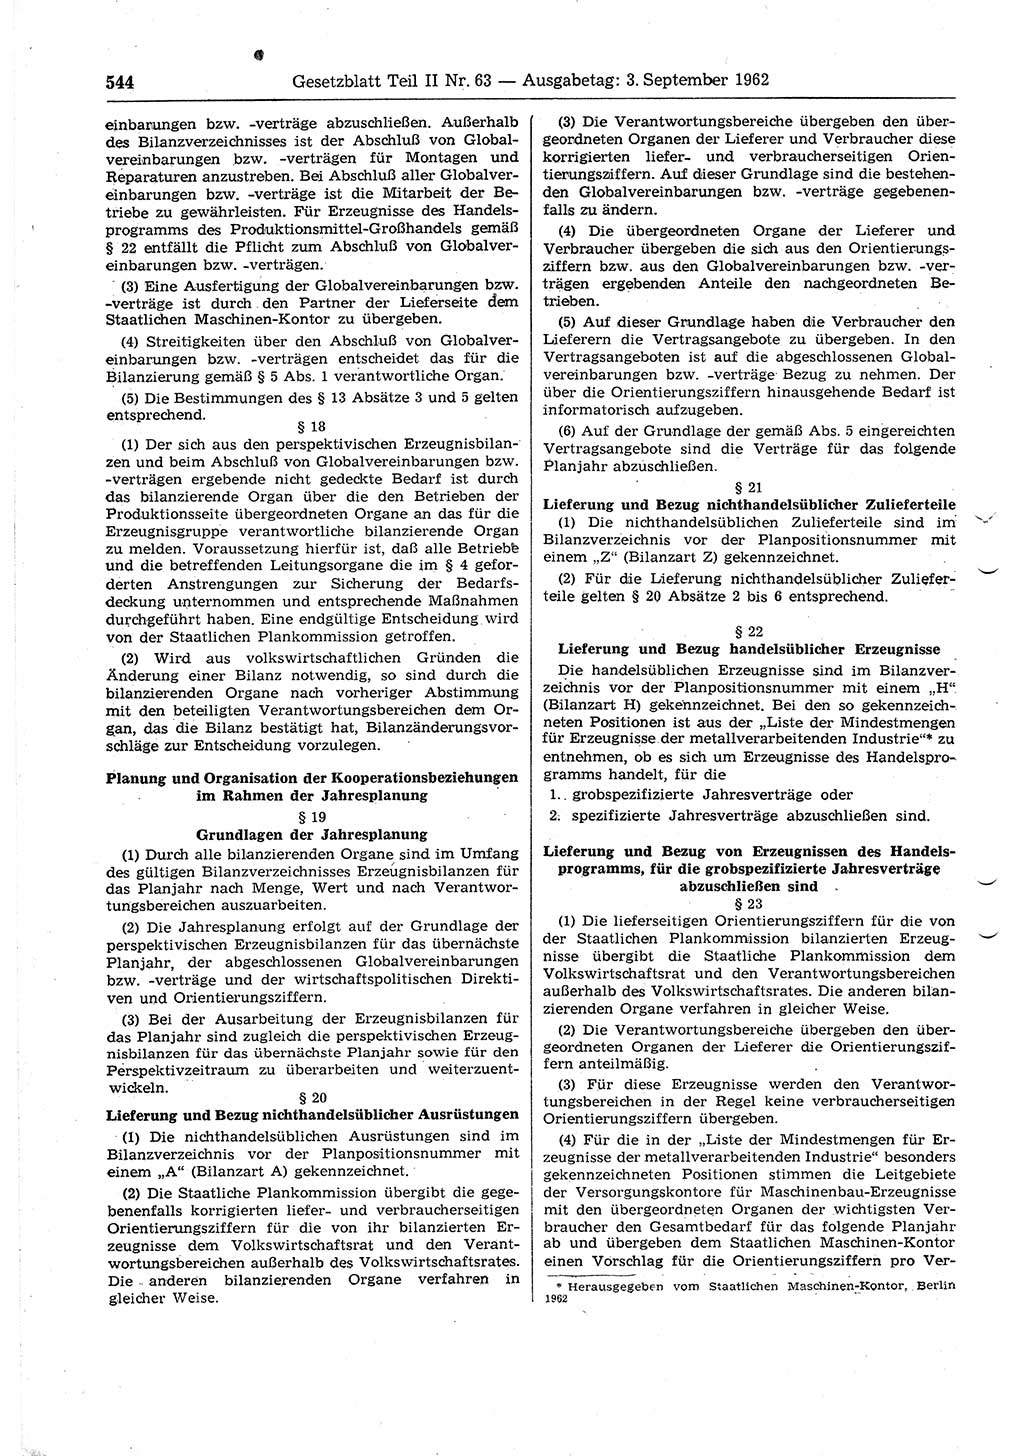 Gesetzblatt (GBl.) der Deutschen Demokratischen Republik (DDR) Teil ⅠⅠ 1962, Seite 544 (GBl. DDR ⅠⅠ 1962, S. 544)